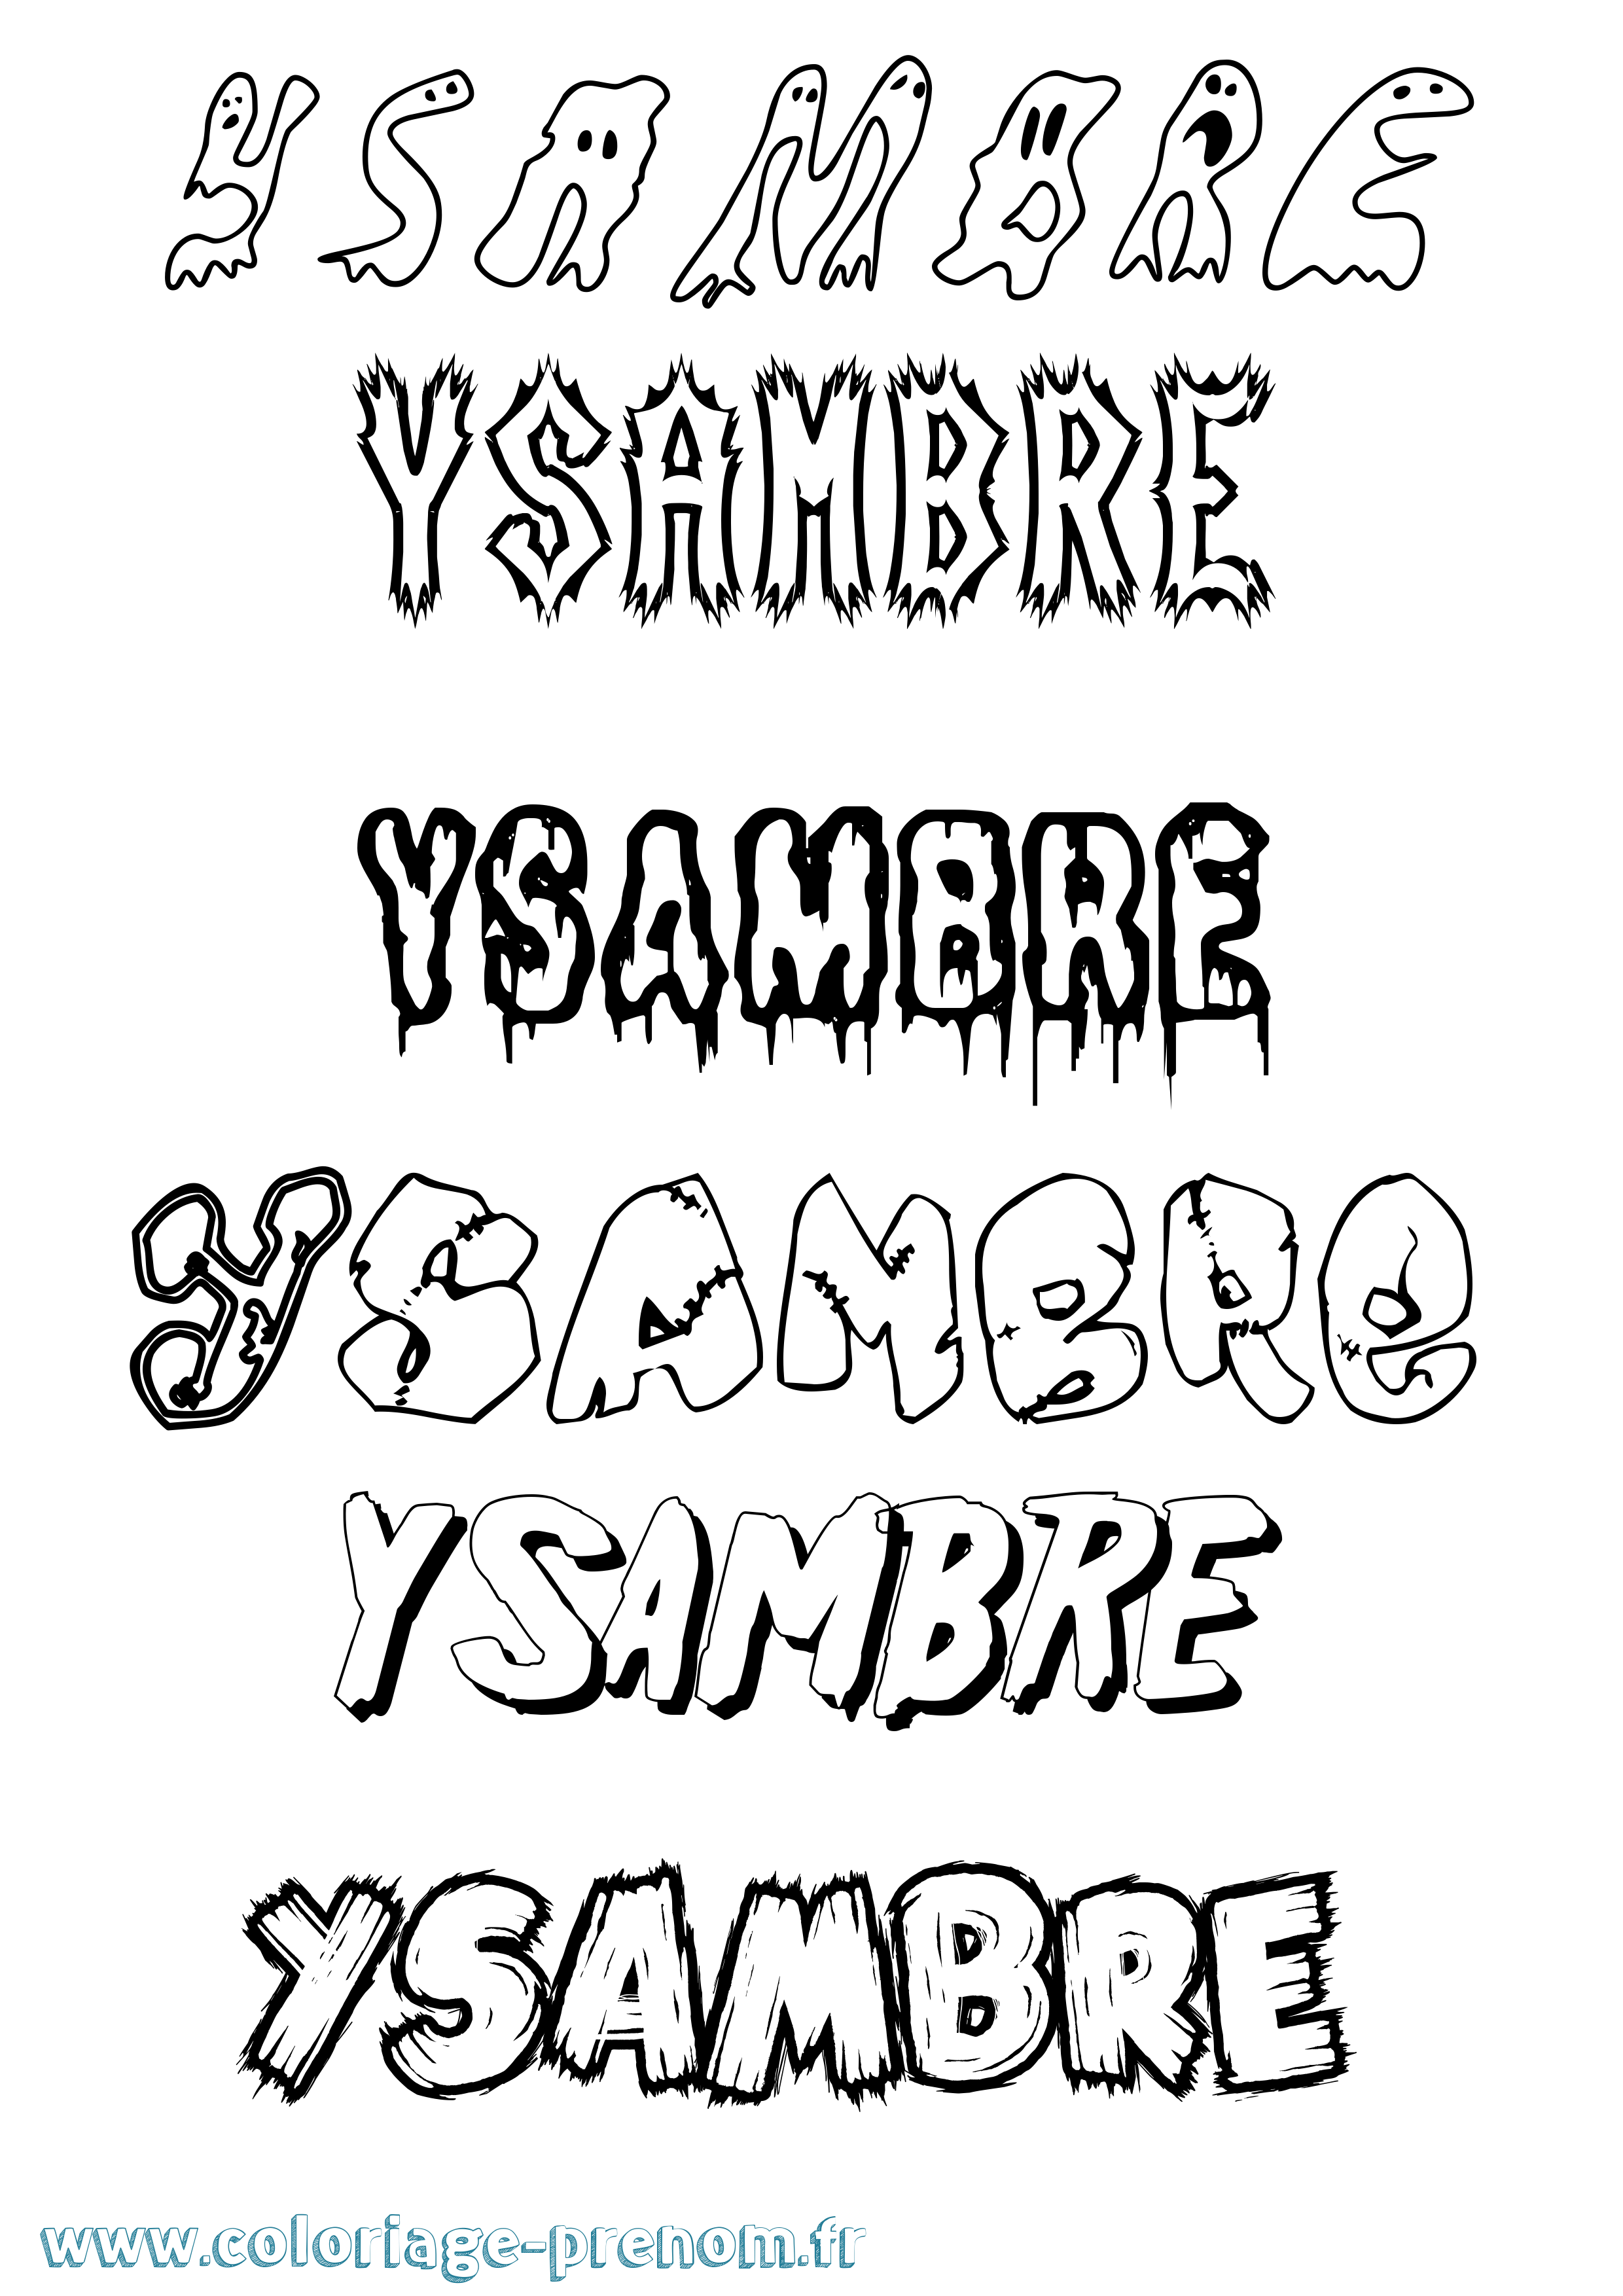 Coloriage prénom Ysambre Frisson